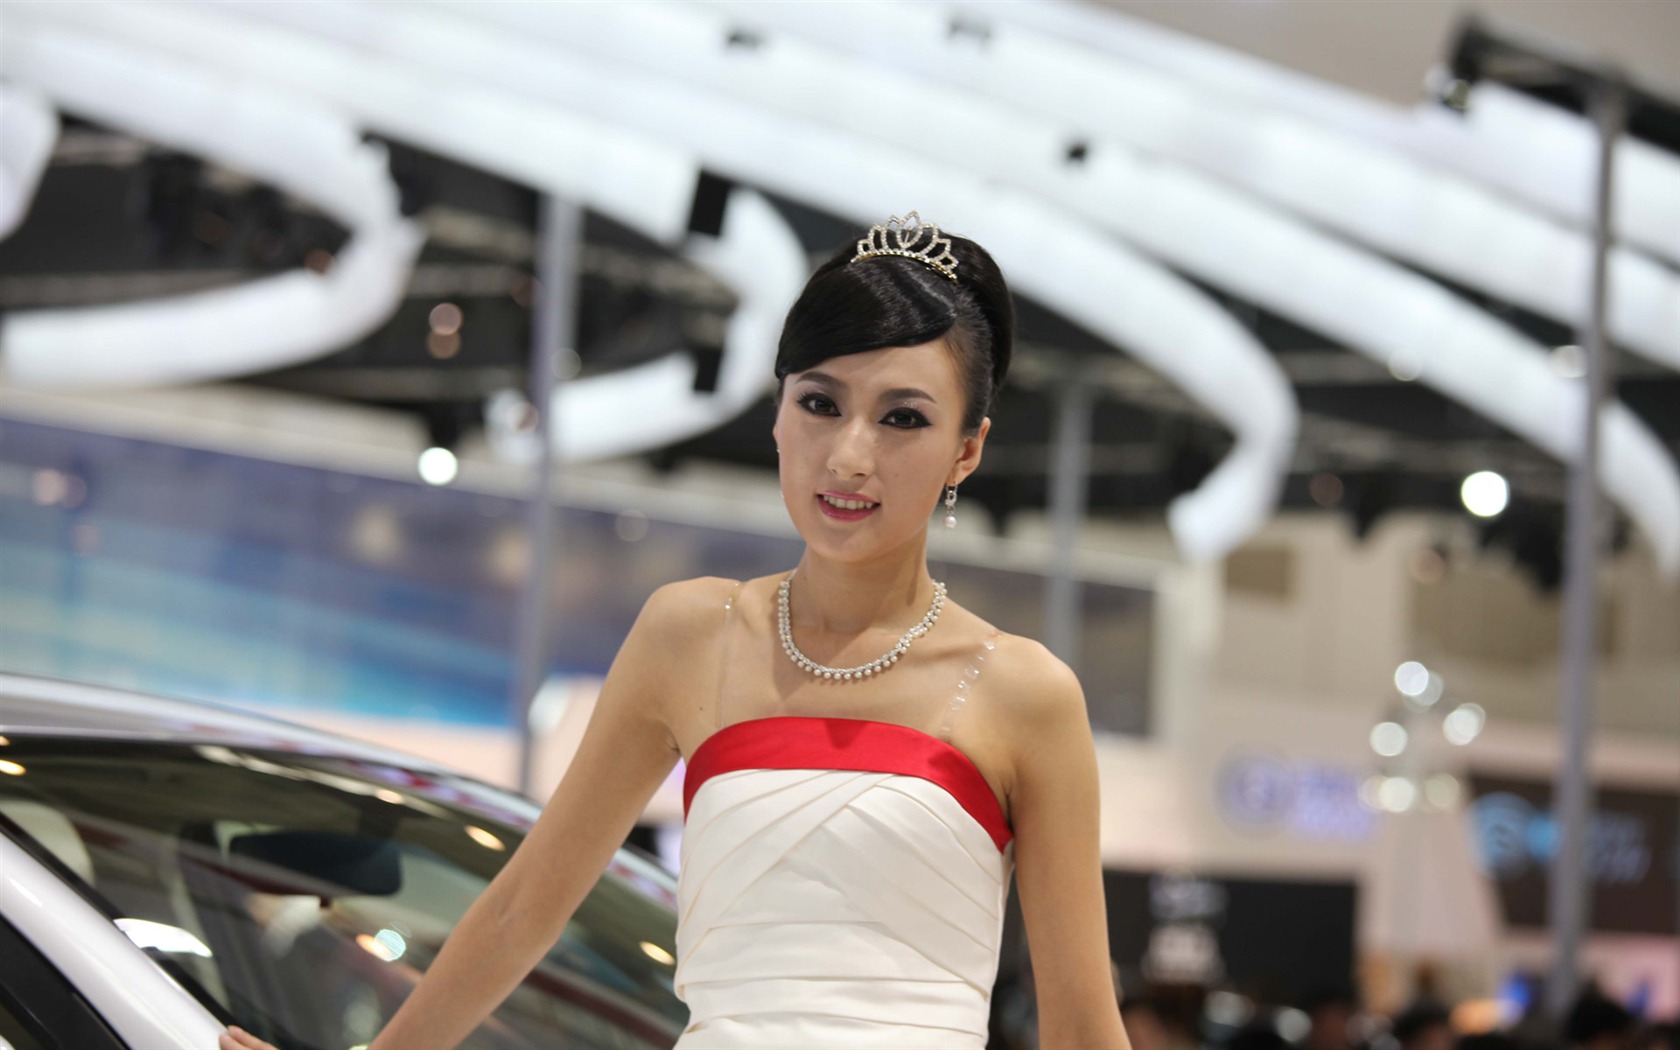 2010 v Pekingu Mezinárodním autosalonu krása (1) (vítr honí mraky práce) #27 - 1680x1050